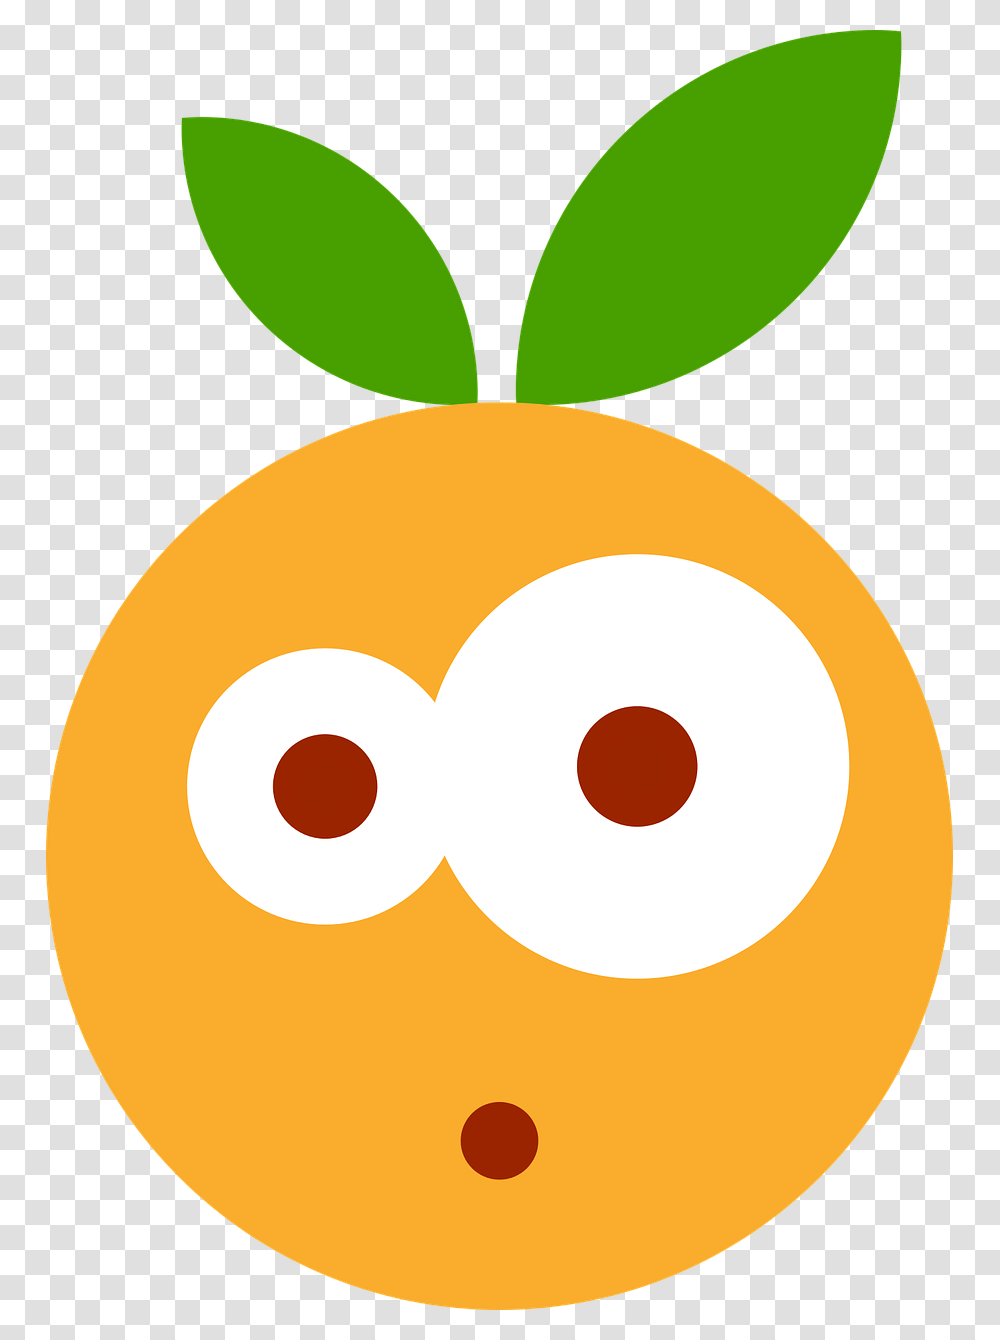 Meyve Emoji, Plant, Food, Vegetable, Carrot Transparent Png